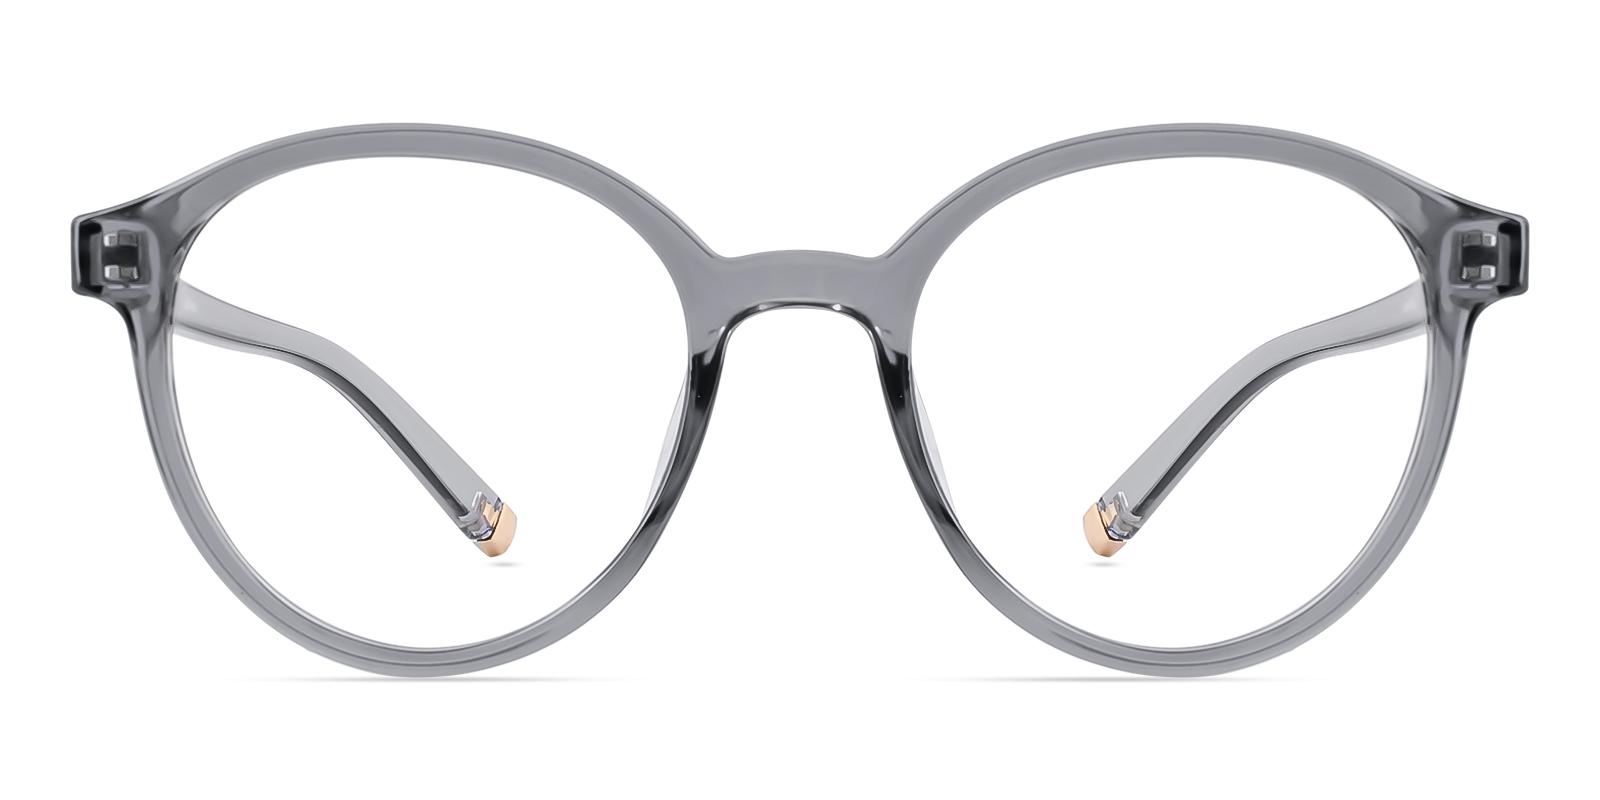 Cellery Gray Plastic Eyeglasses , UniversalBridgeFit Frames from ABBE Glasses